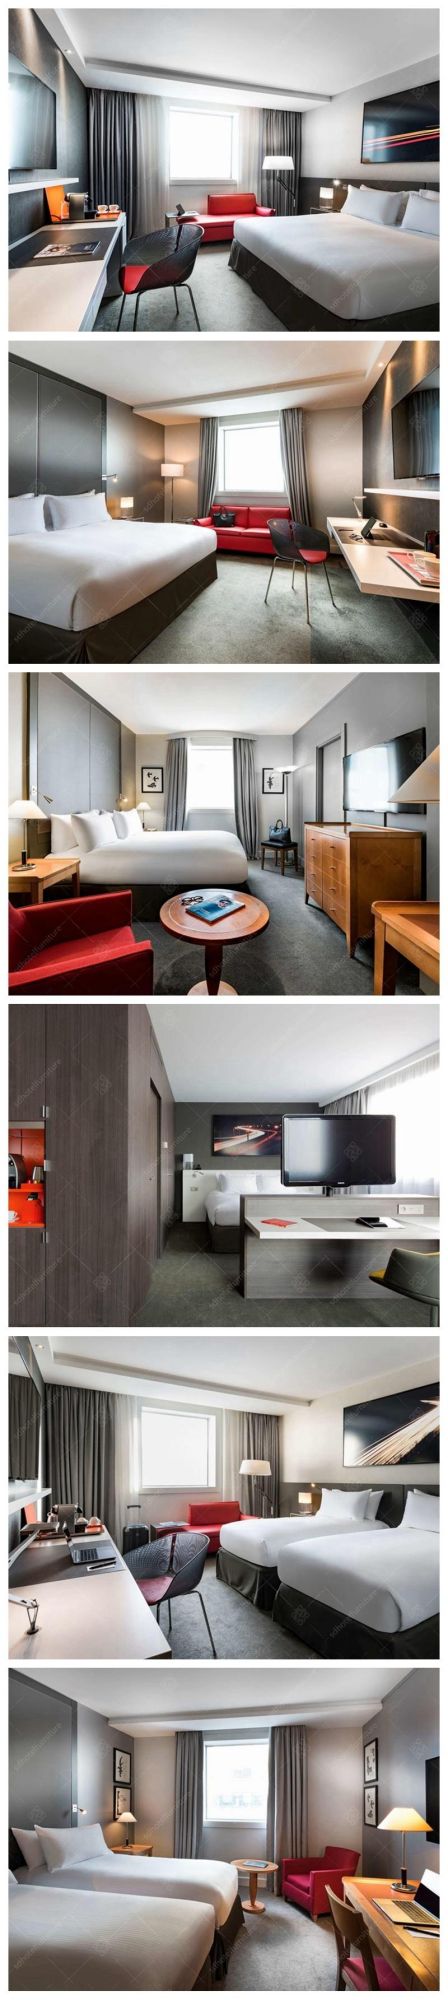 Modern Fashionable Design 5 Stars Hotel Bedroom Furniture Sets